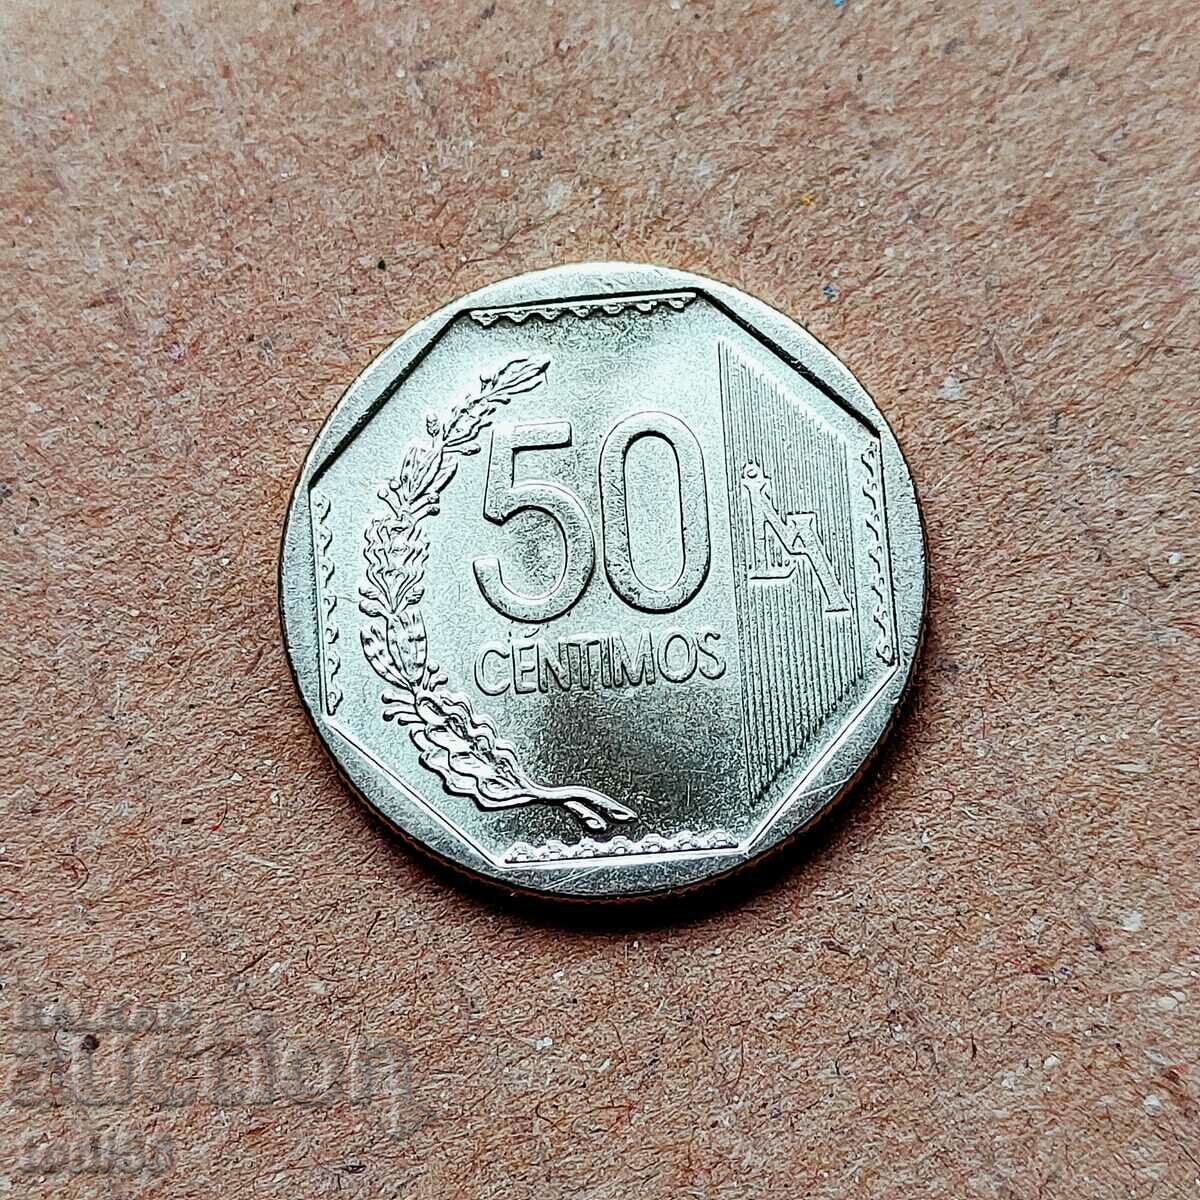 Περού - 50 centimos 2007 UNC